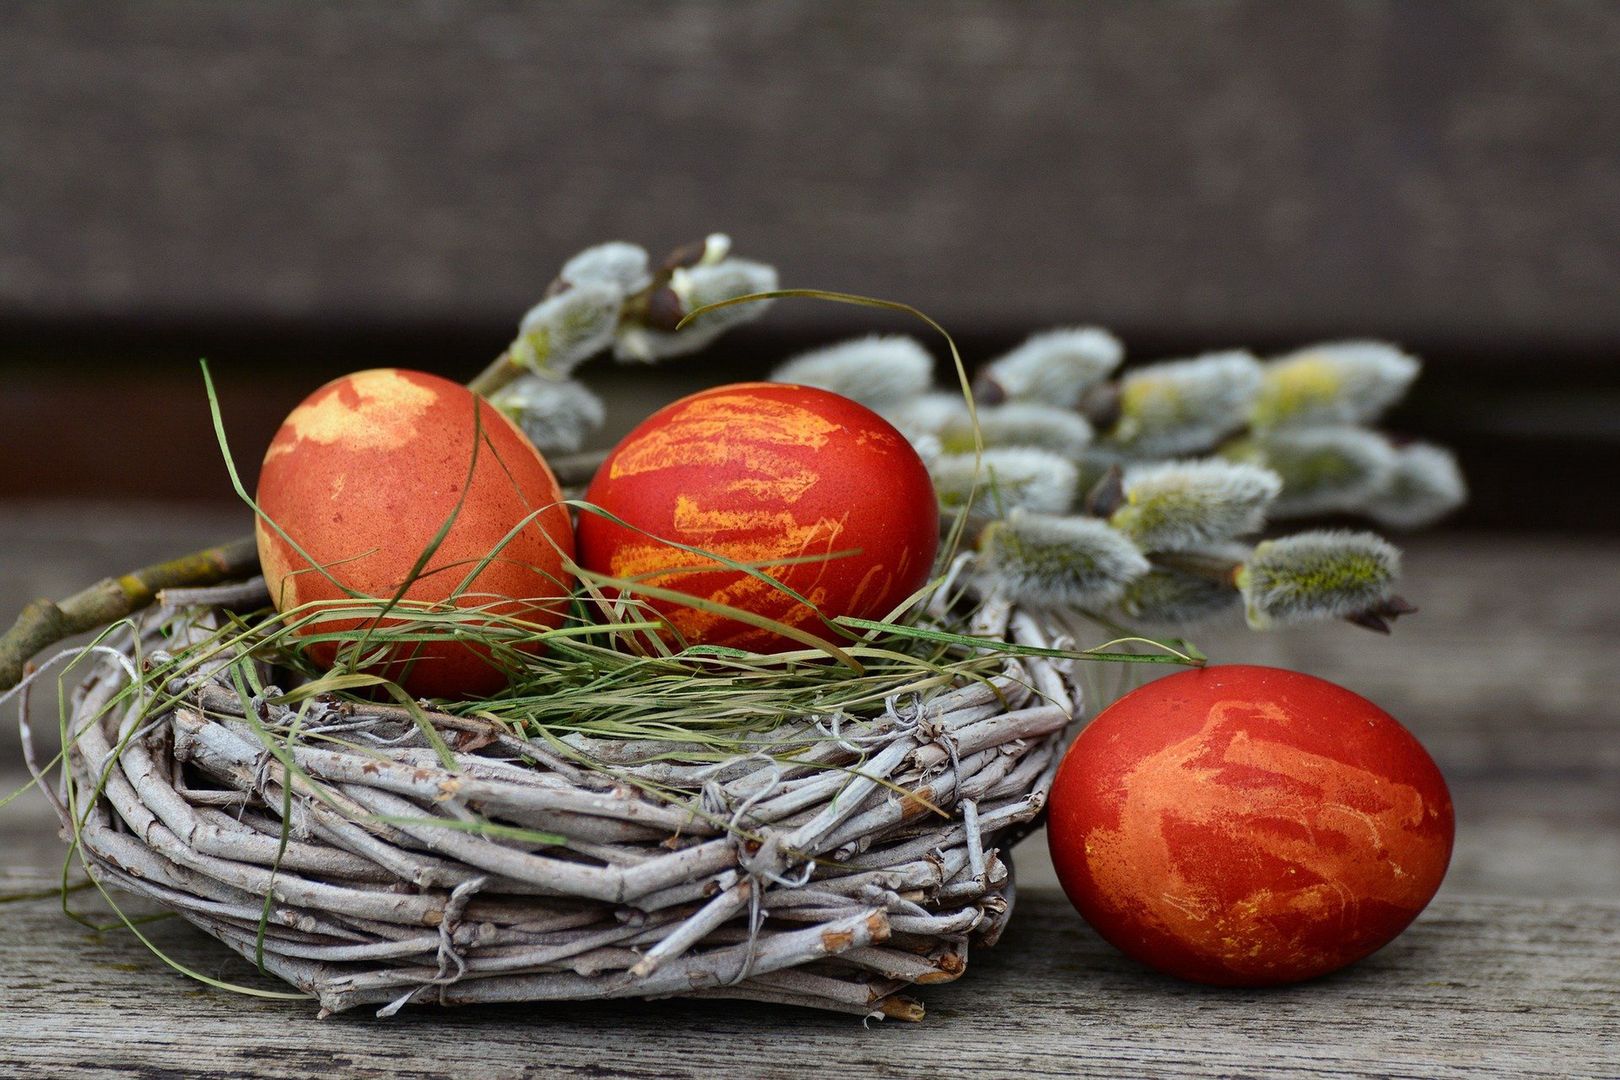 Co z obostrzeniami na Wielkanoc? Minister zdrowia komentuje